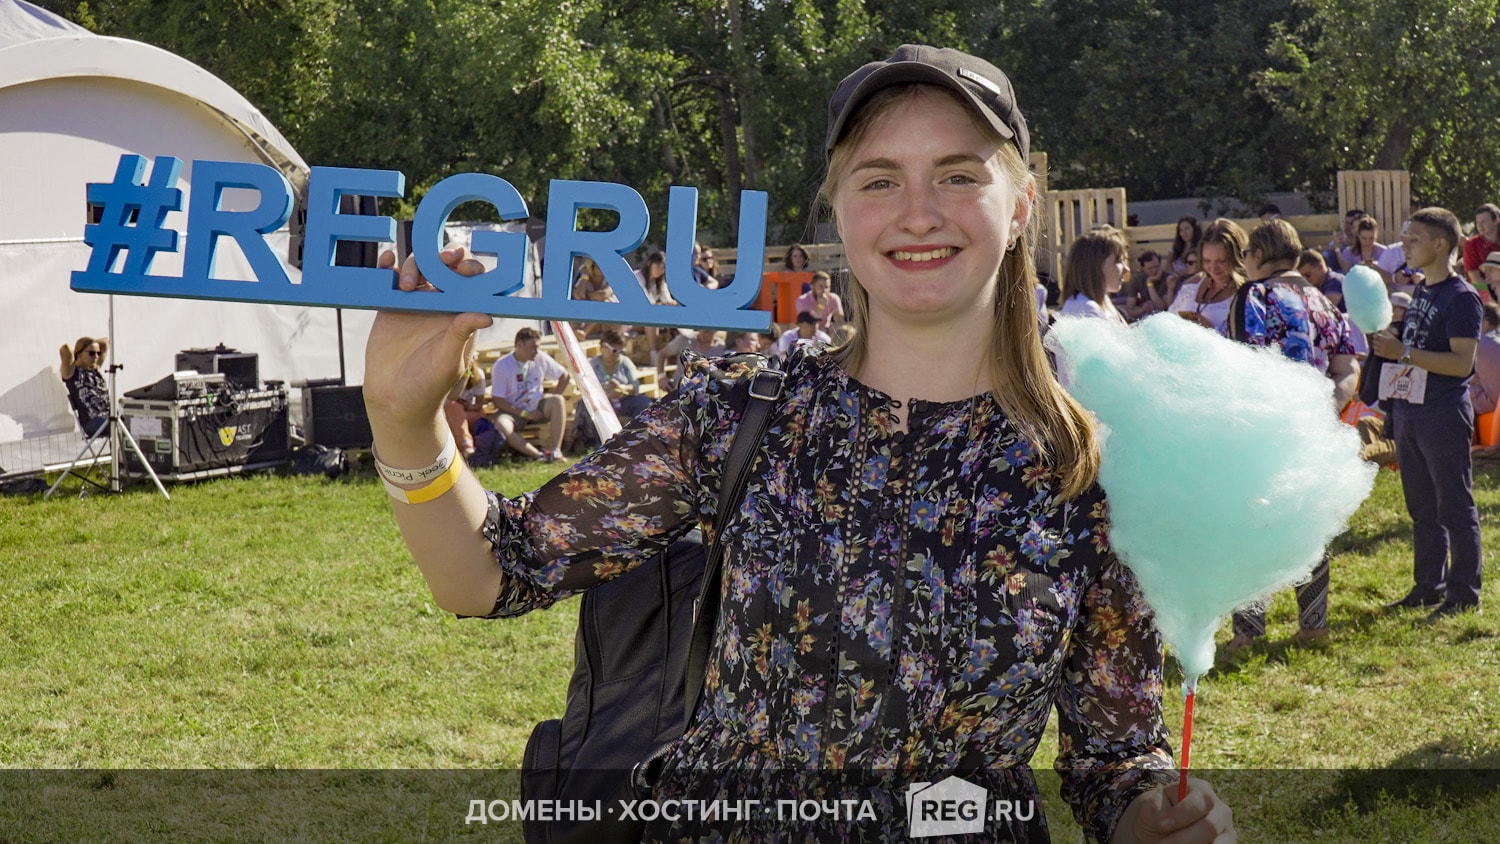 Участники фестиваля могли попробовать сладкой синей гик-ваты и сфотографироваться с прелестными regru_girls.